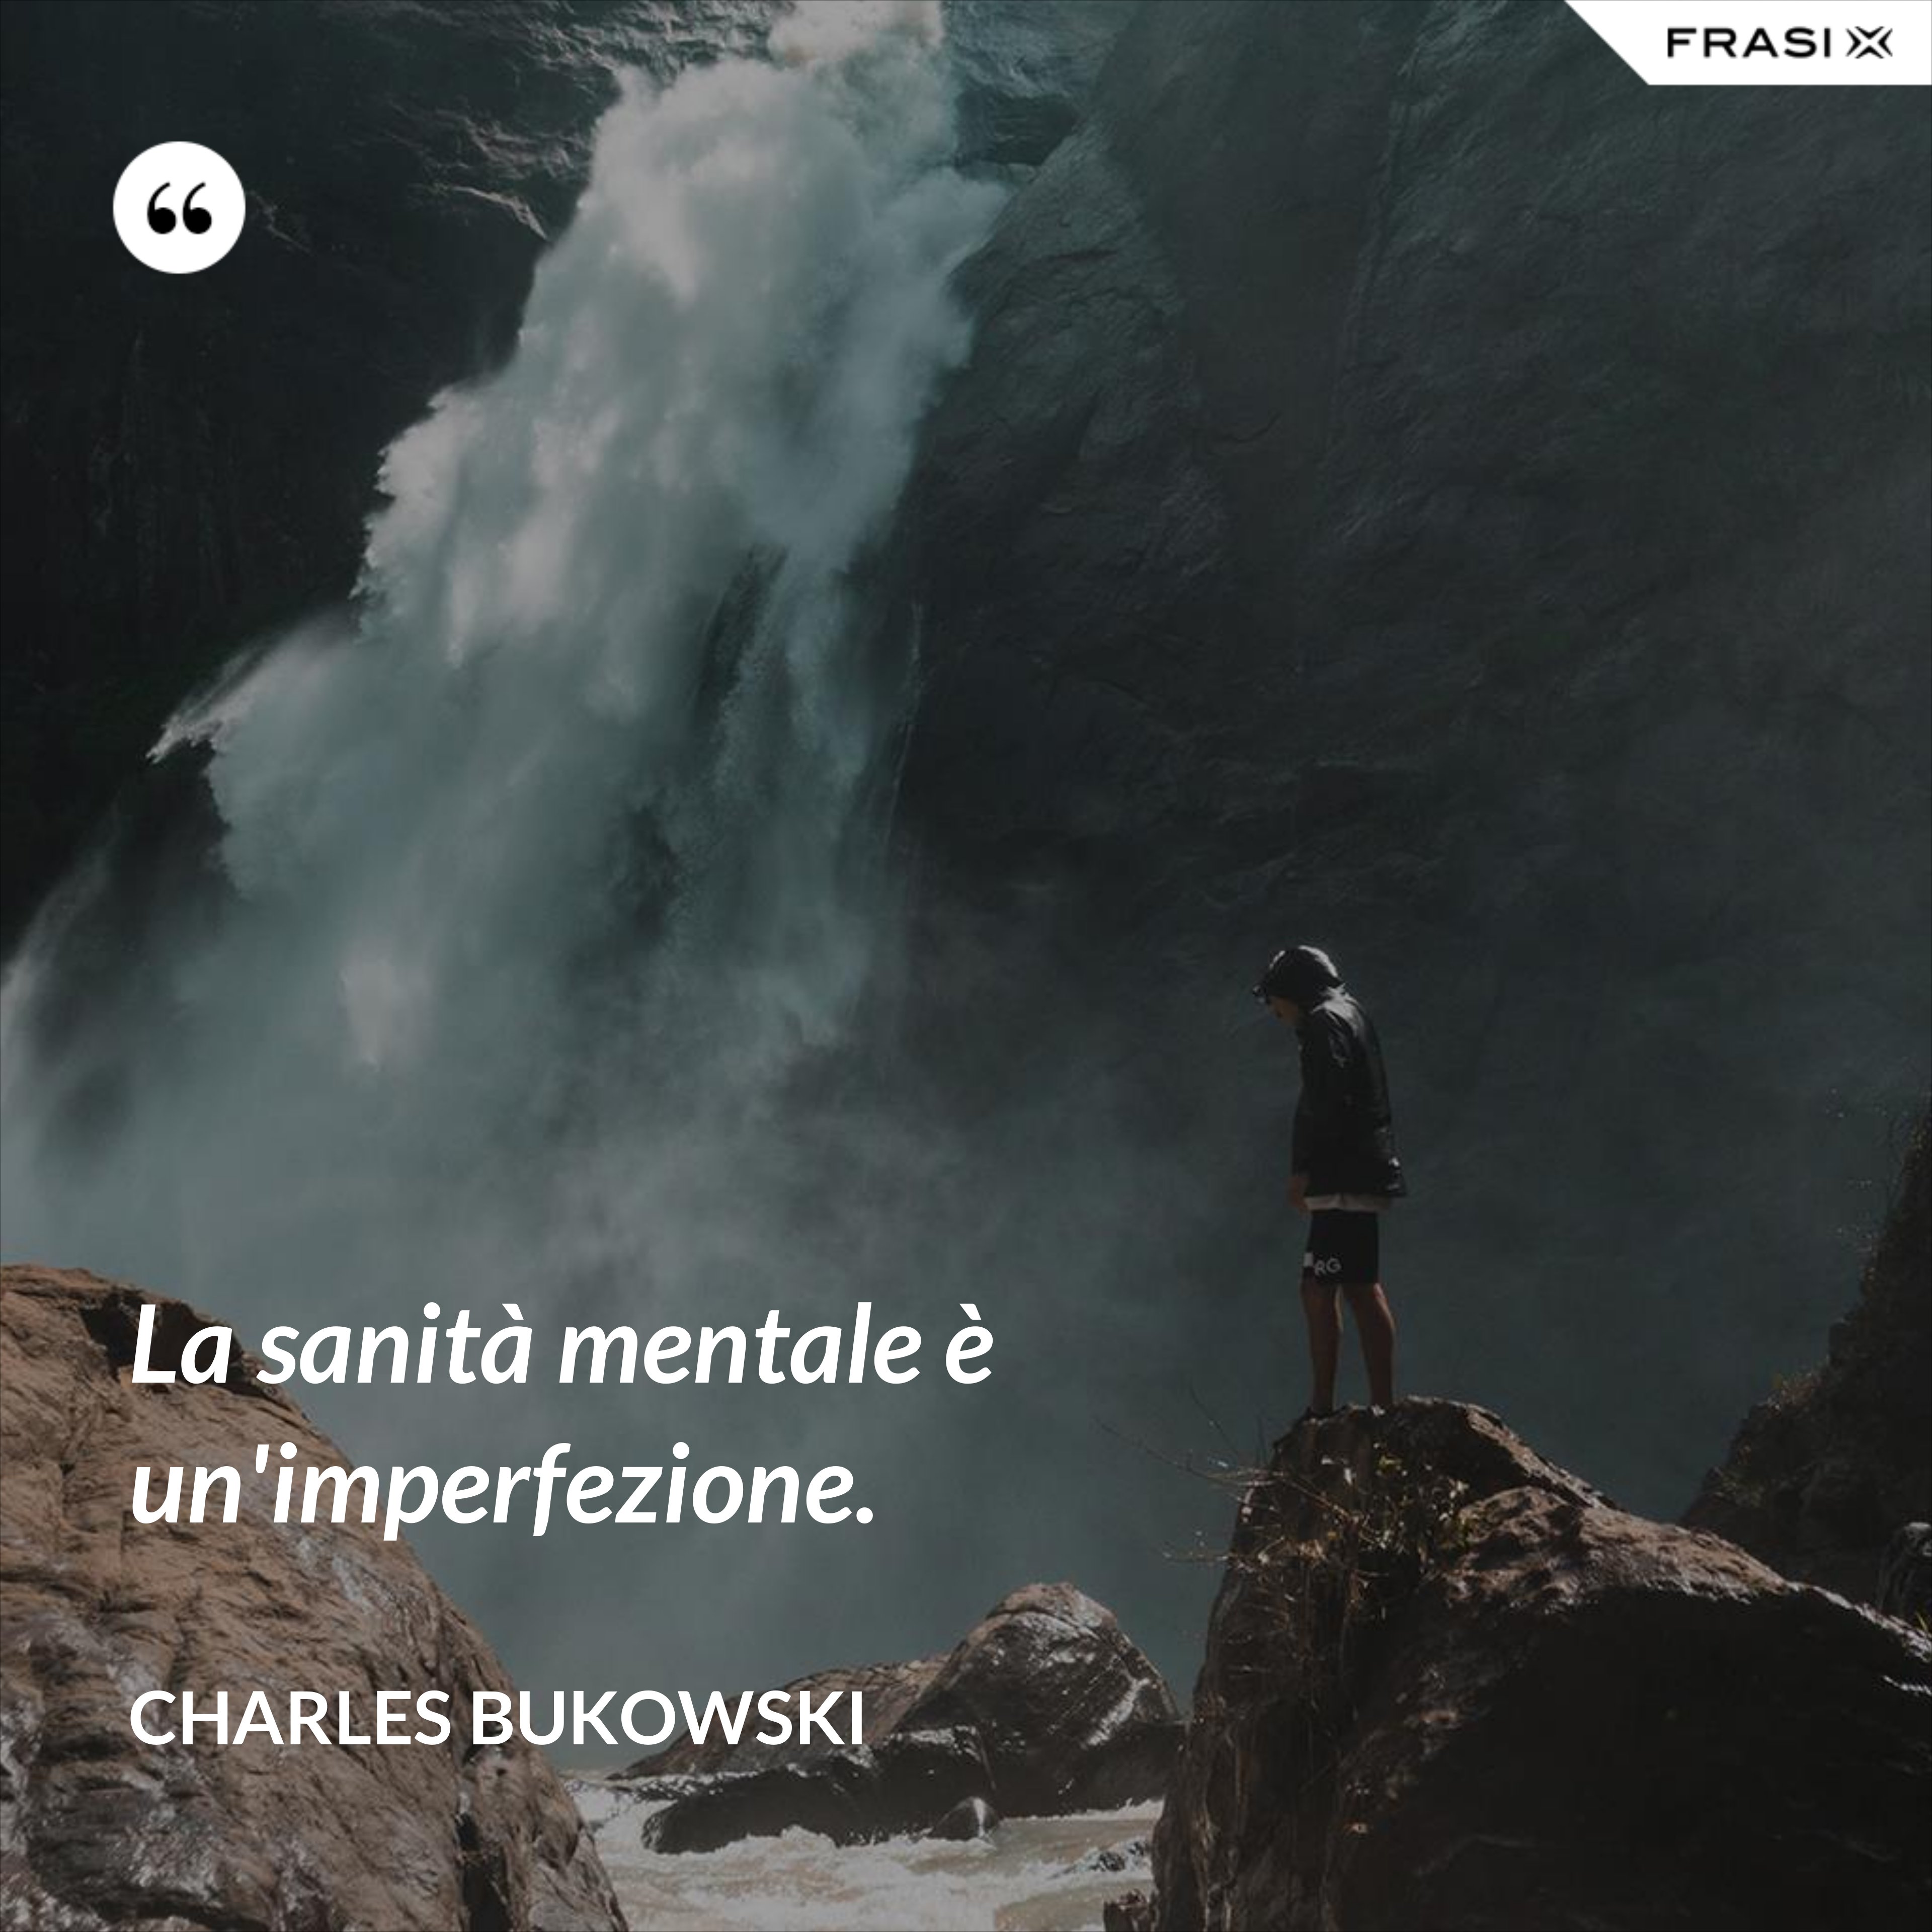 La sanità mentale è un'imperfezione. - Charles Bukowski